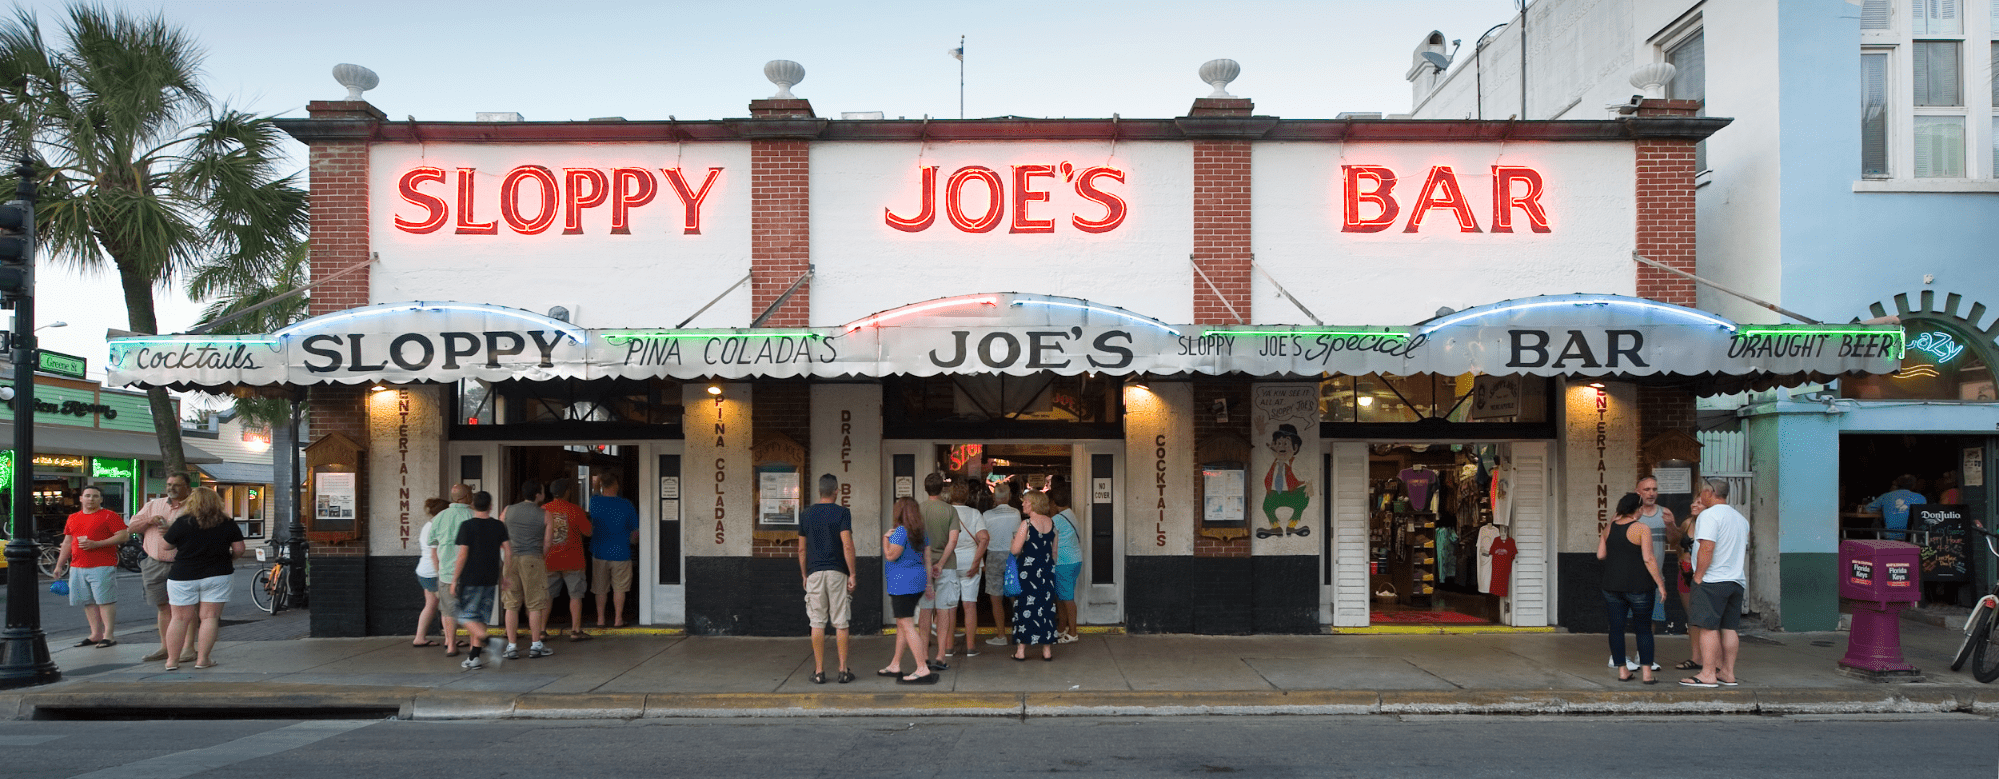 Sloppy Joe's Bar exterior